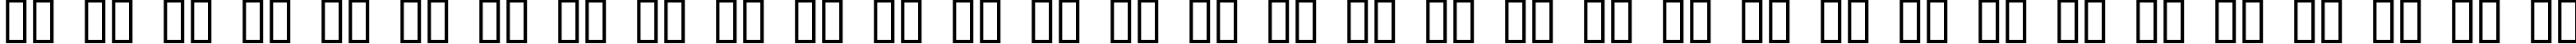 Пример написания русского алфавита шрифтом Digital Readout Upright